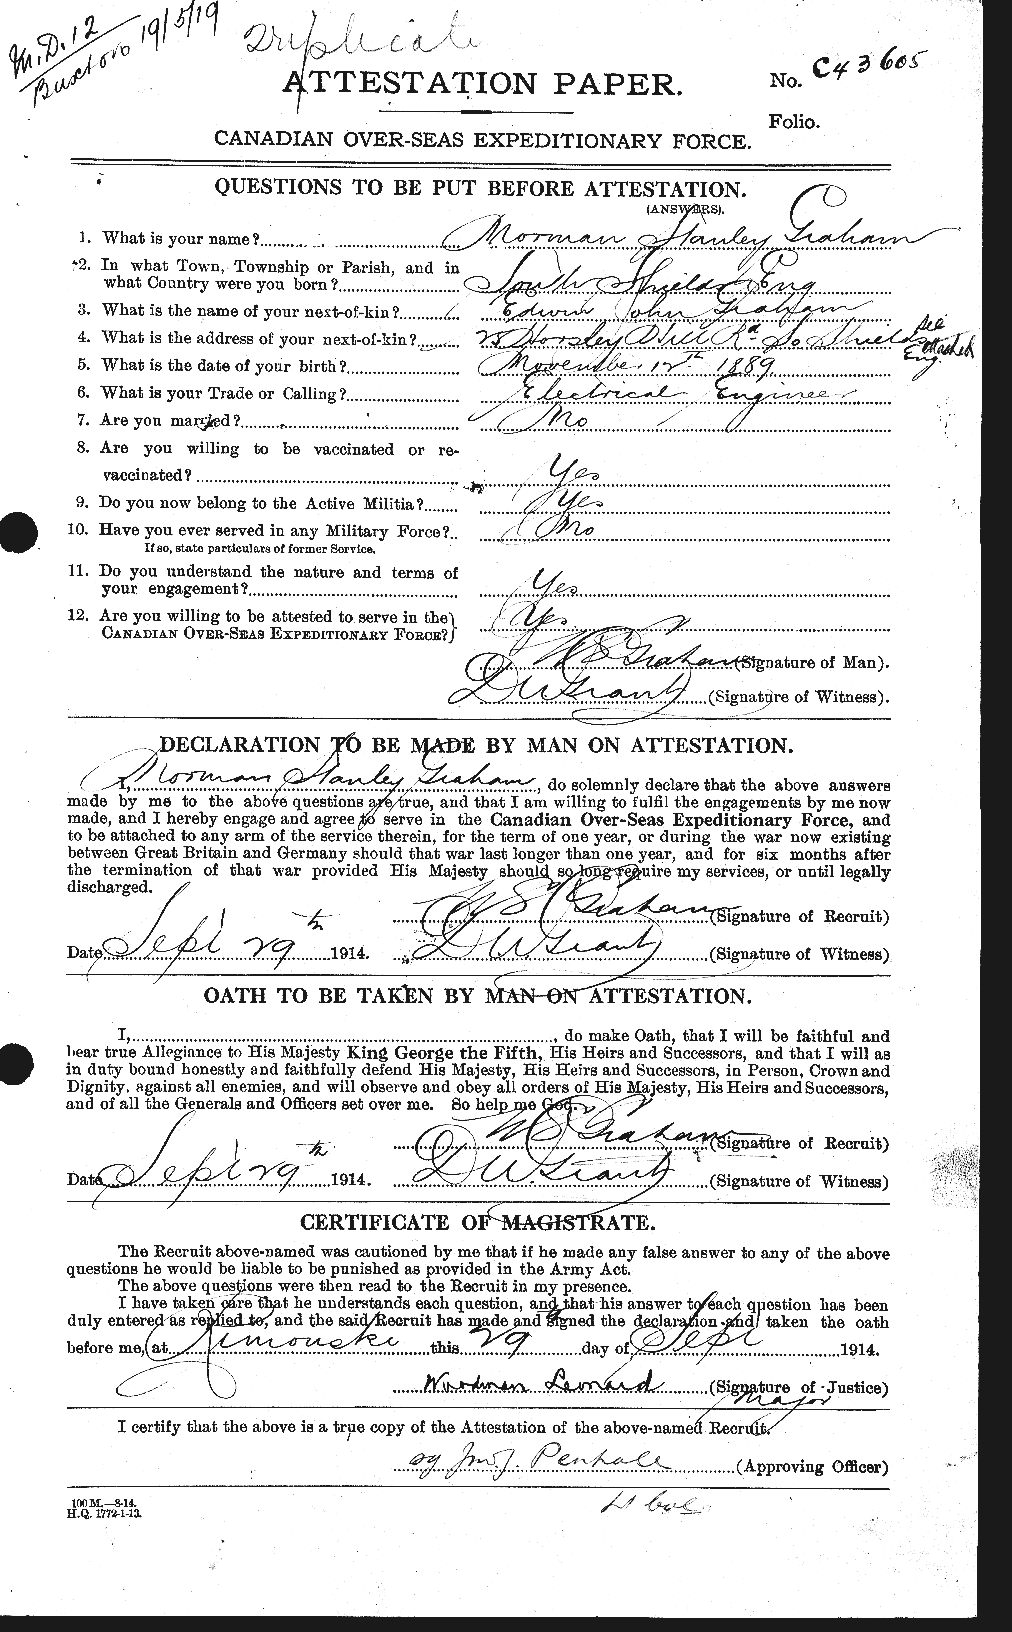 Dossiers du Personnel de la Première Guerre mondiale - CEC 359326a